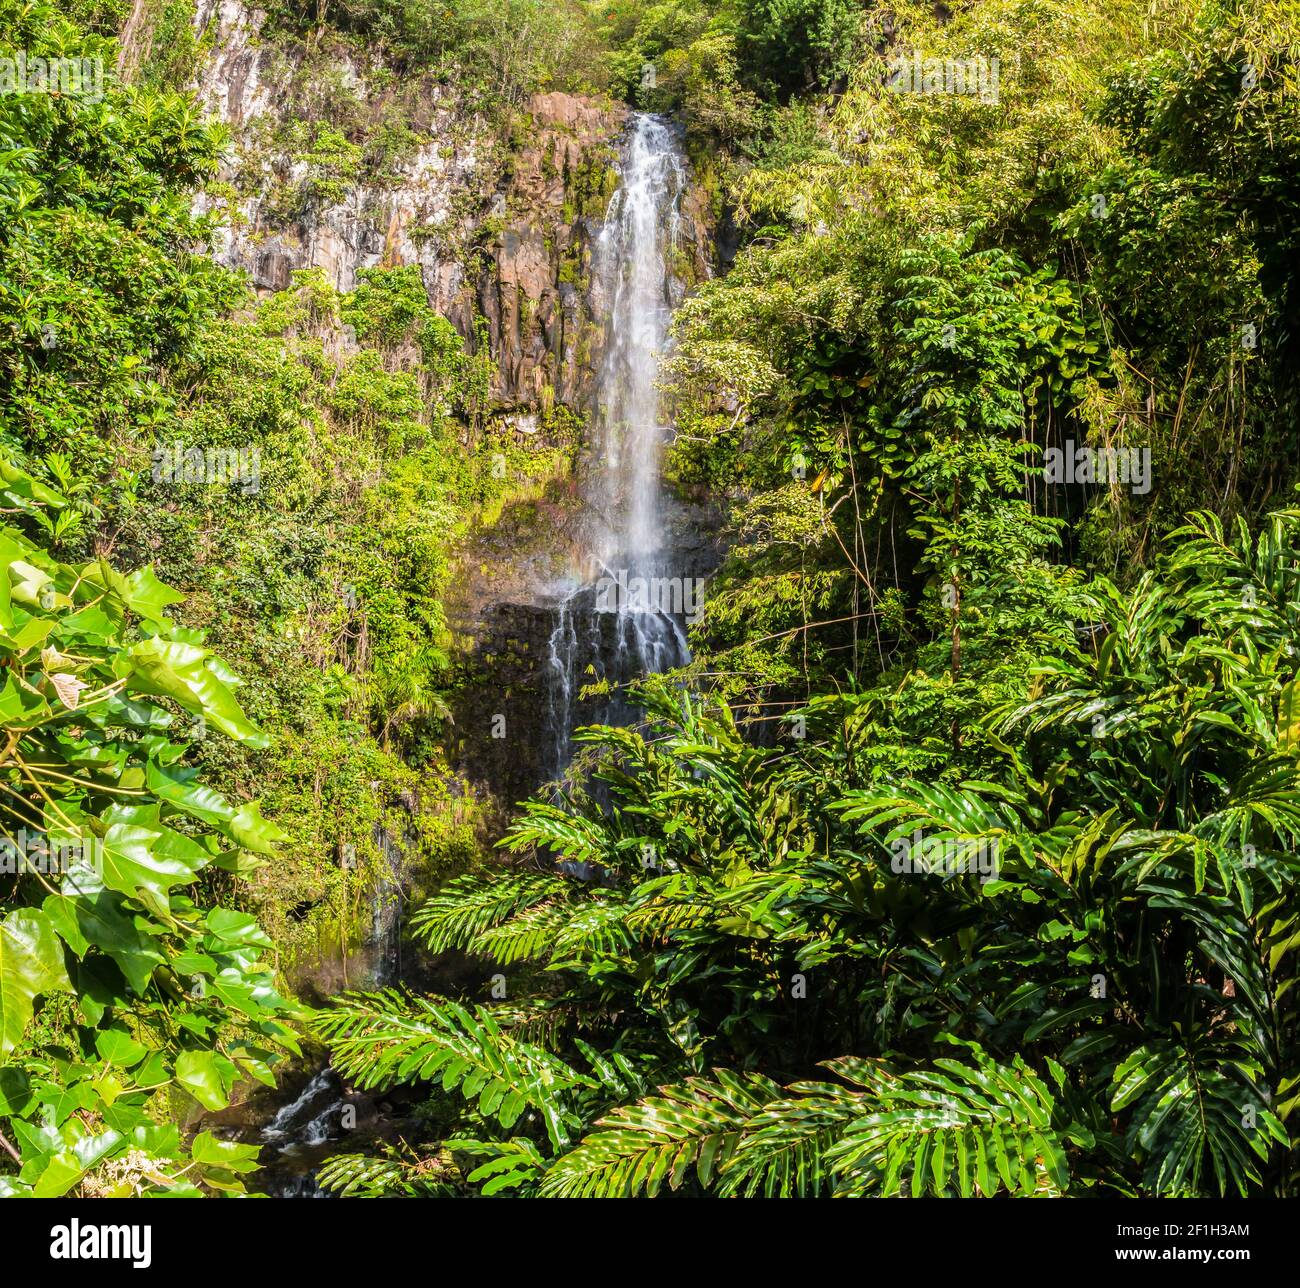 Wailua Falls on The Hana Highway, Maui, Hawaii, USA Stock Photo